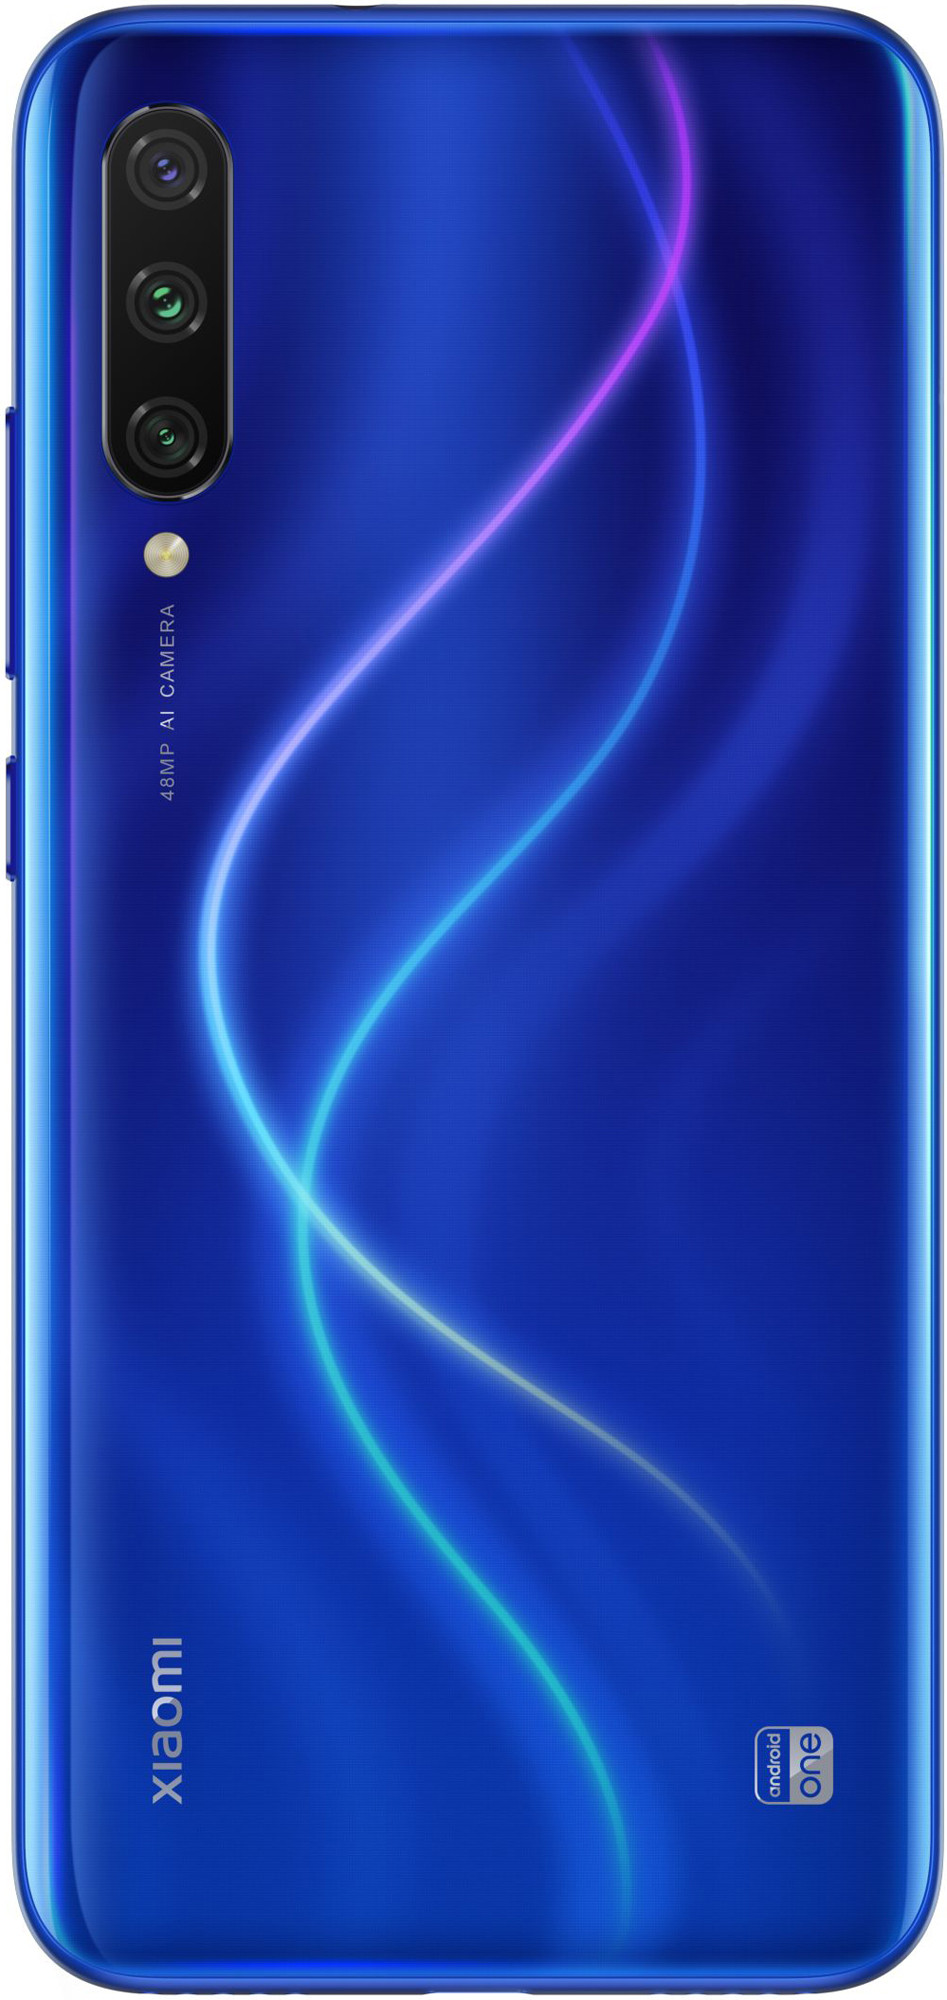 Смартфон Xiaomi Mi A3 4/64GB Blue (Синий)